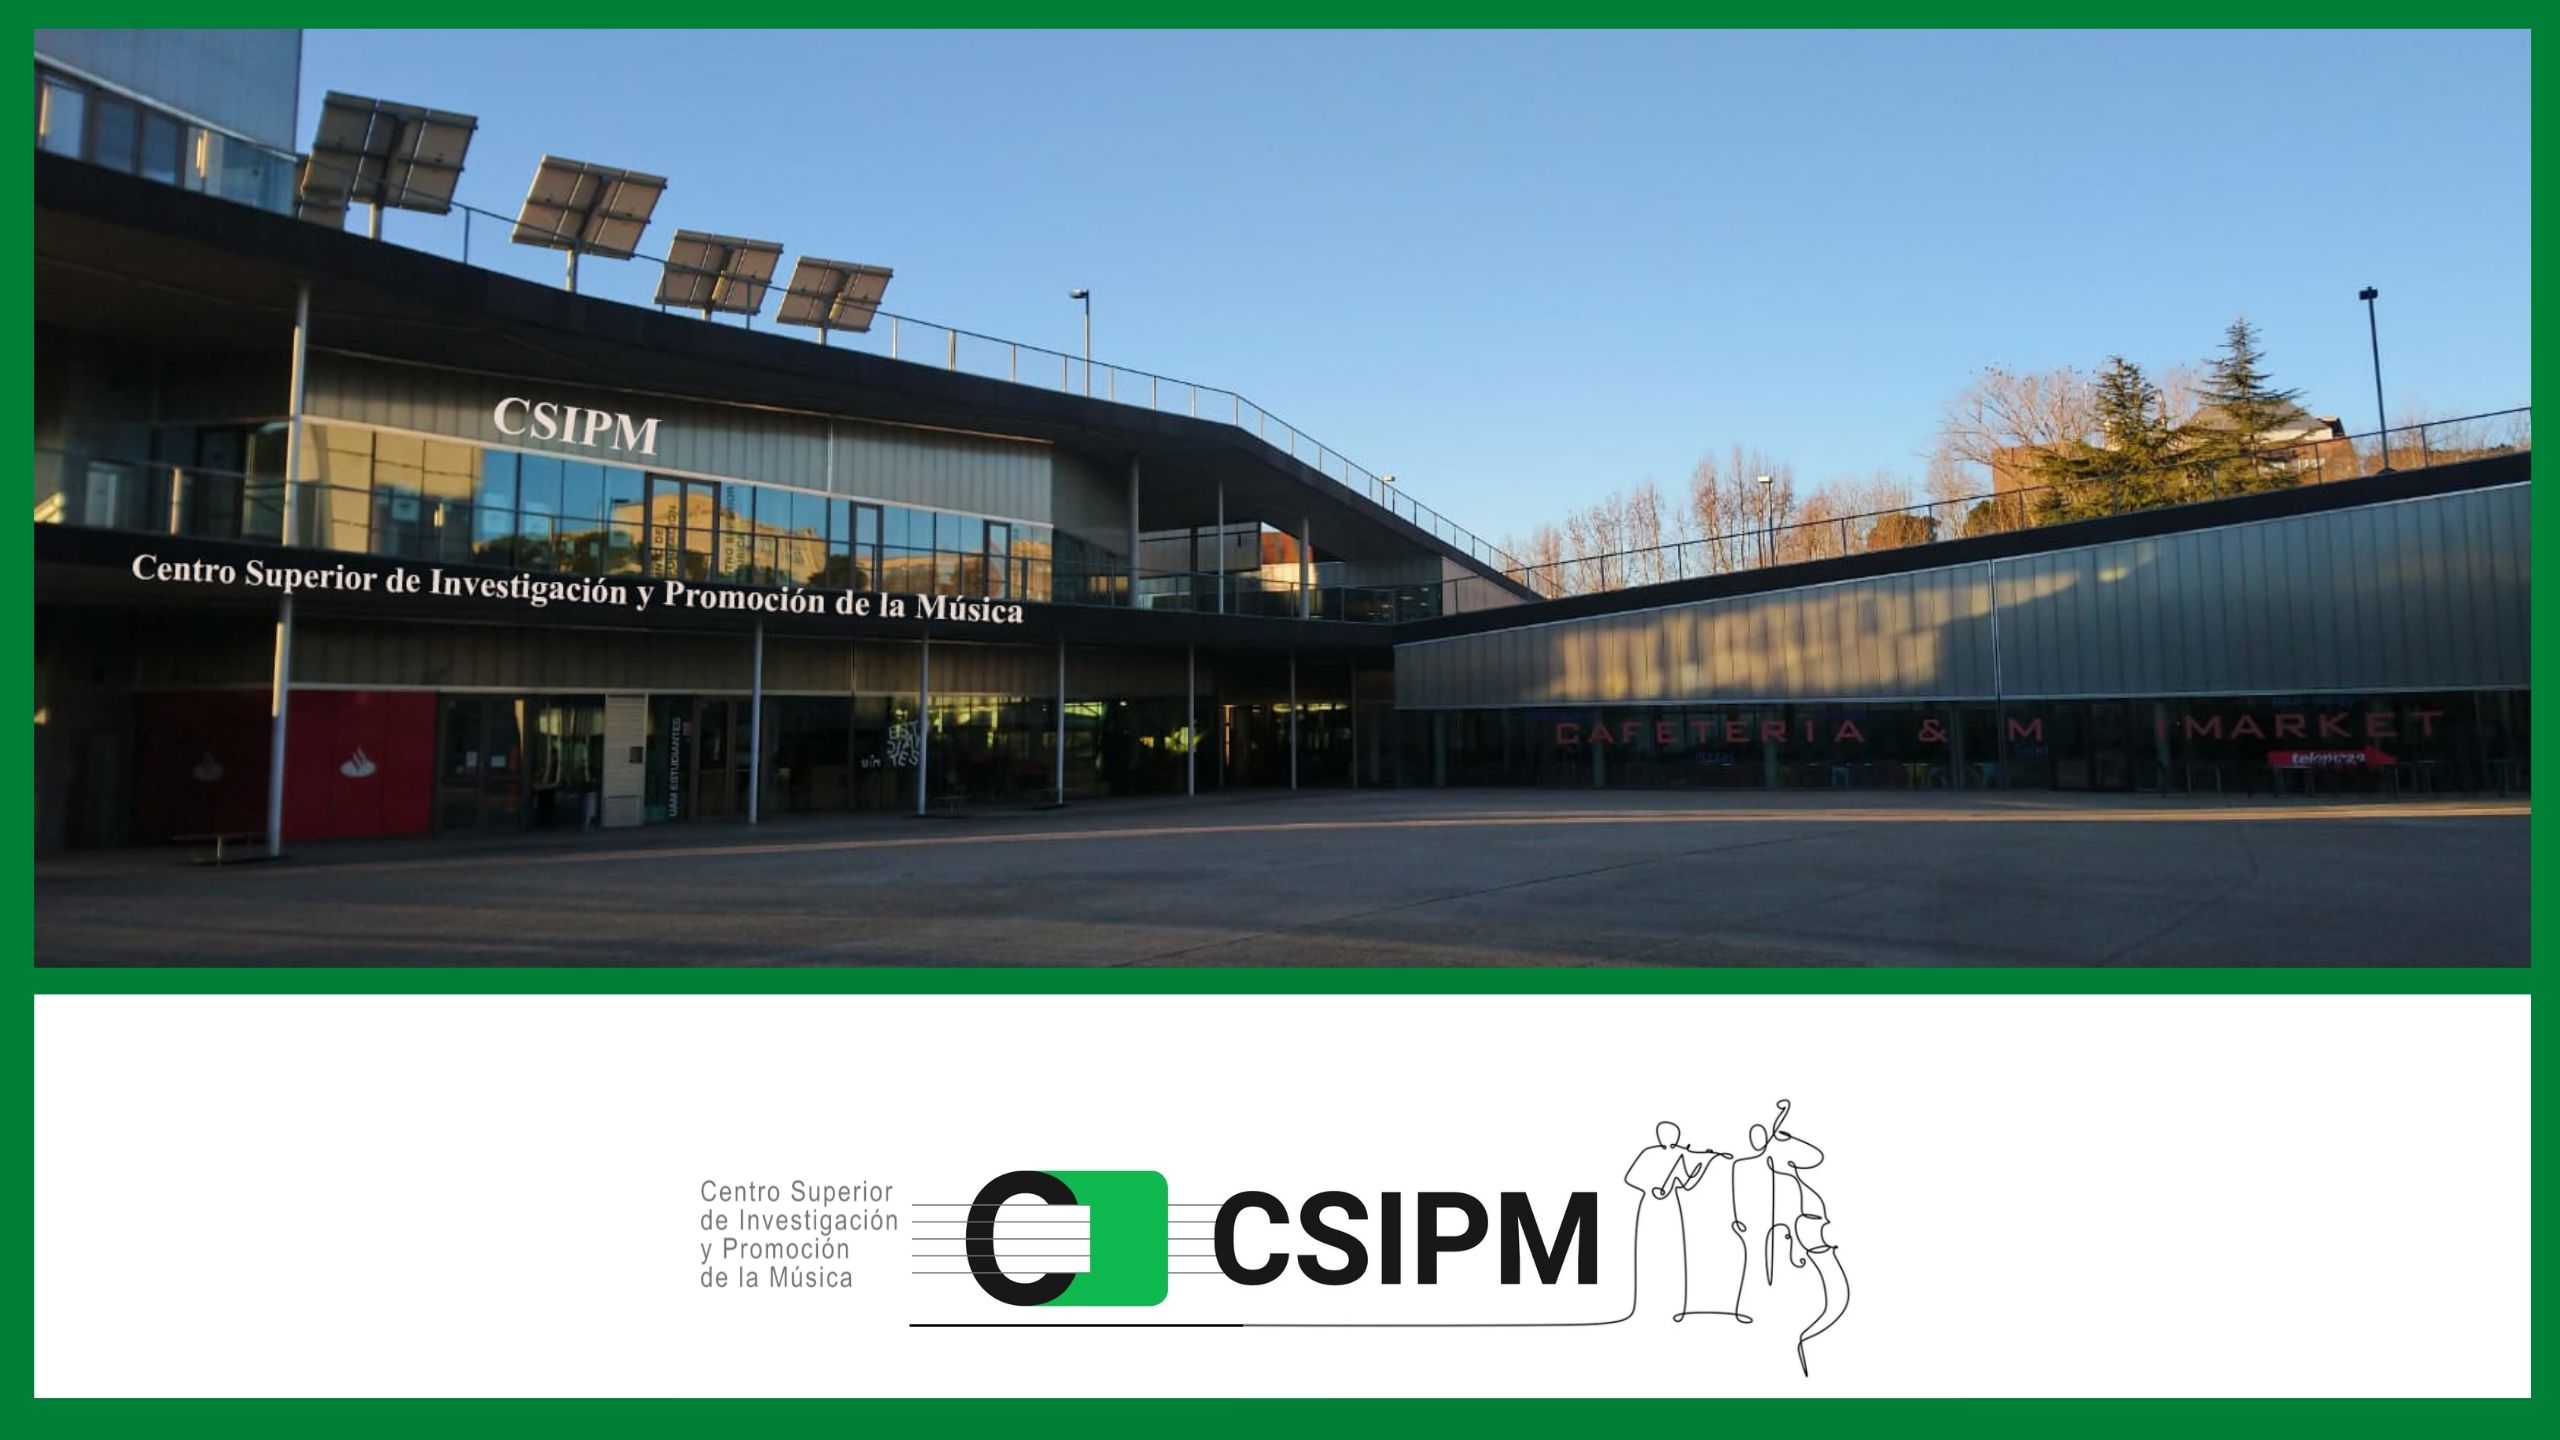 CSIPM - Centro Superior de Investigación y Promoción de la Música